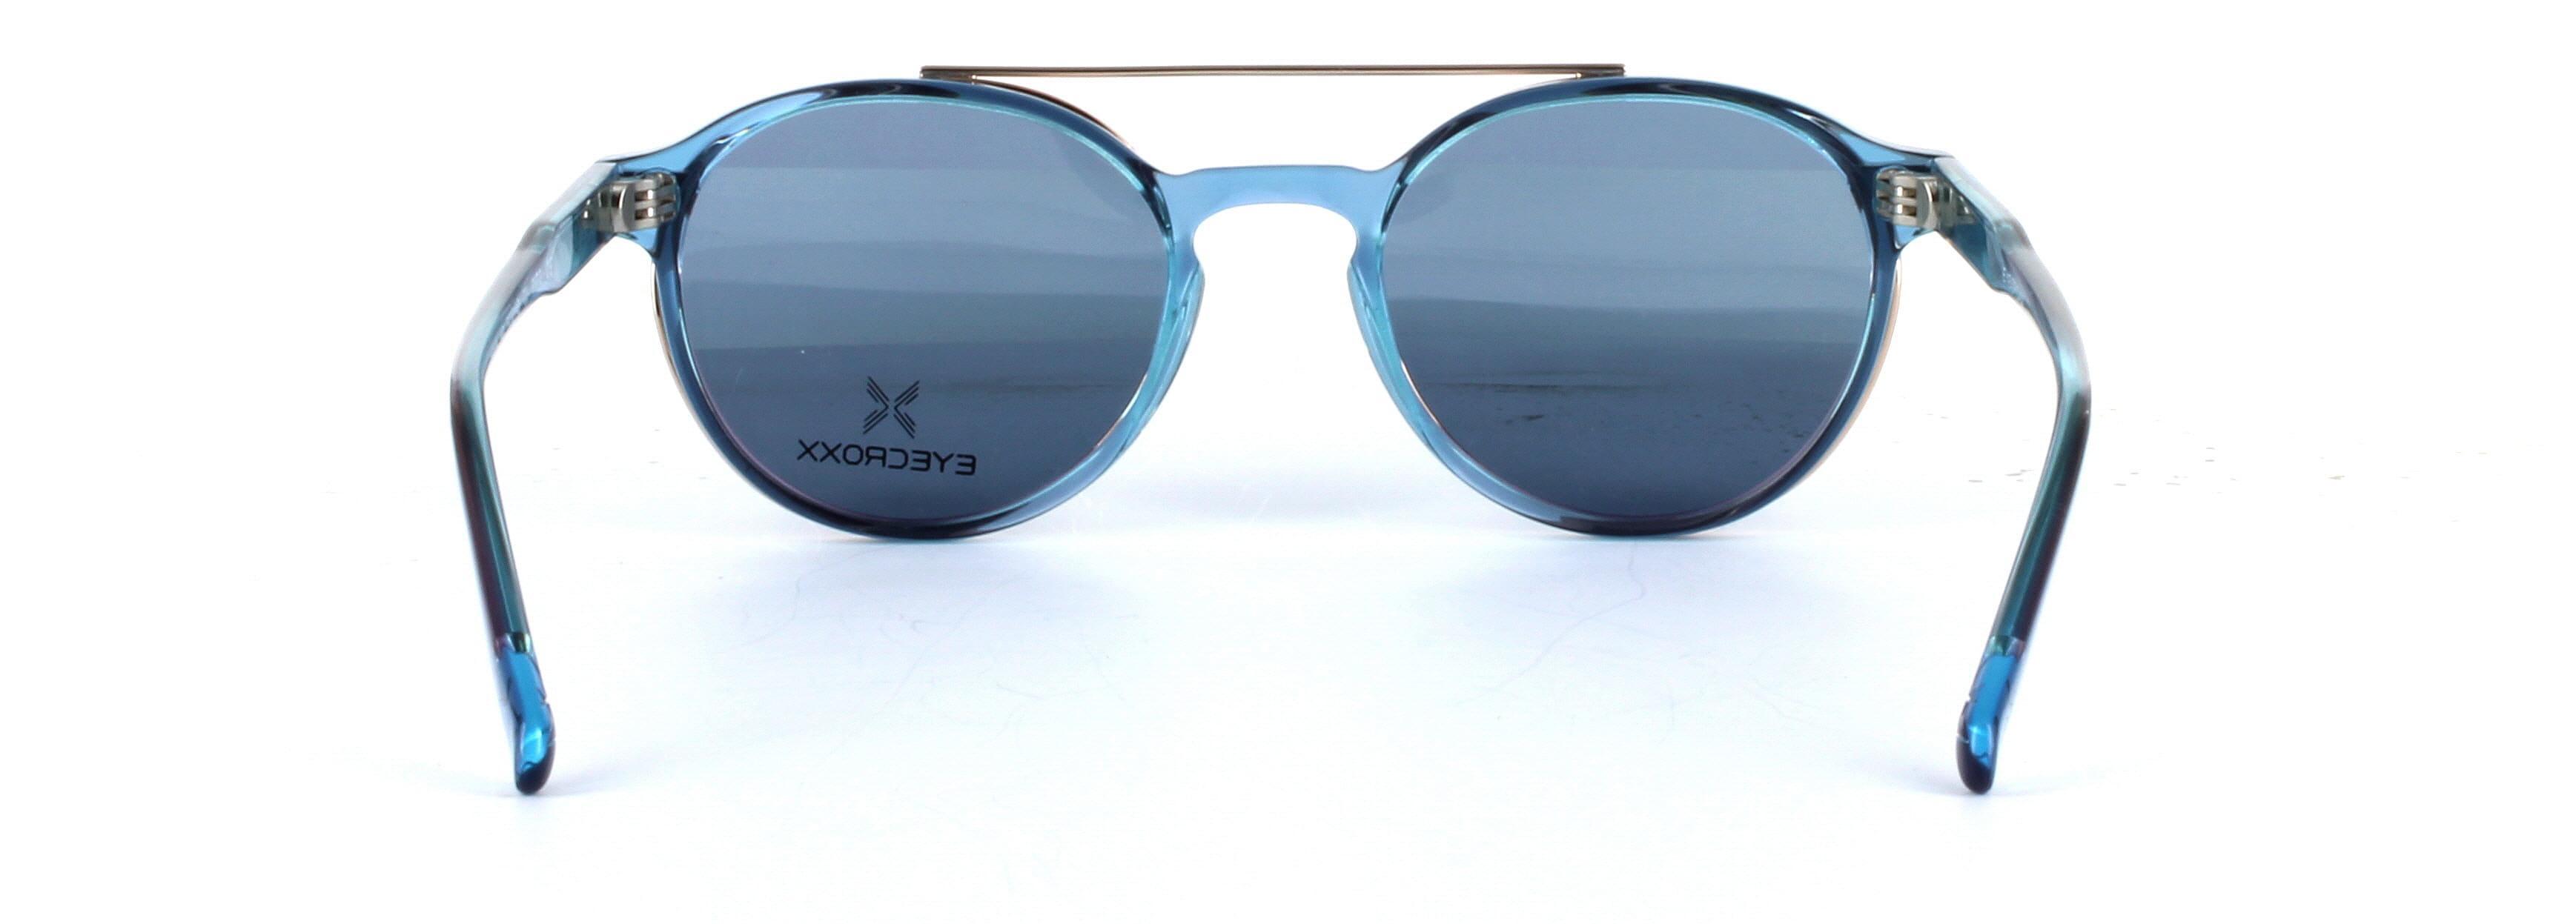 Eyecroxx 621 Blue Full Rim Round Acetate Glasses - Image View 3